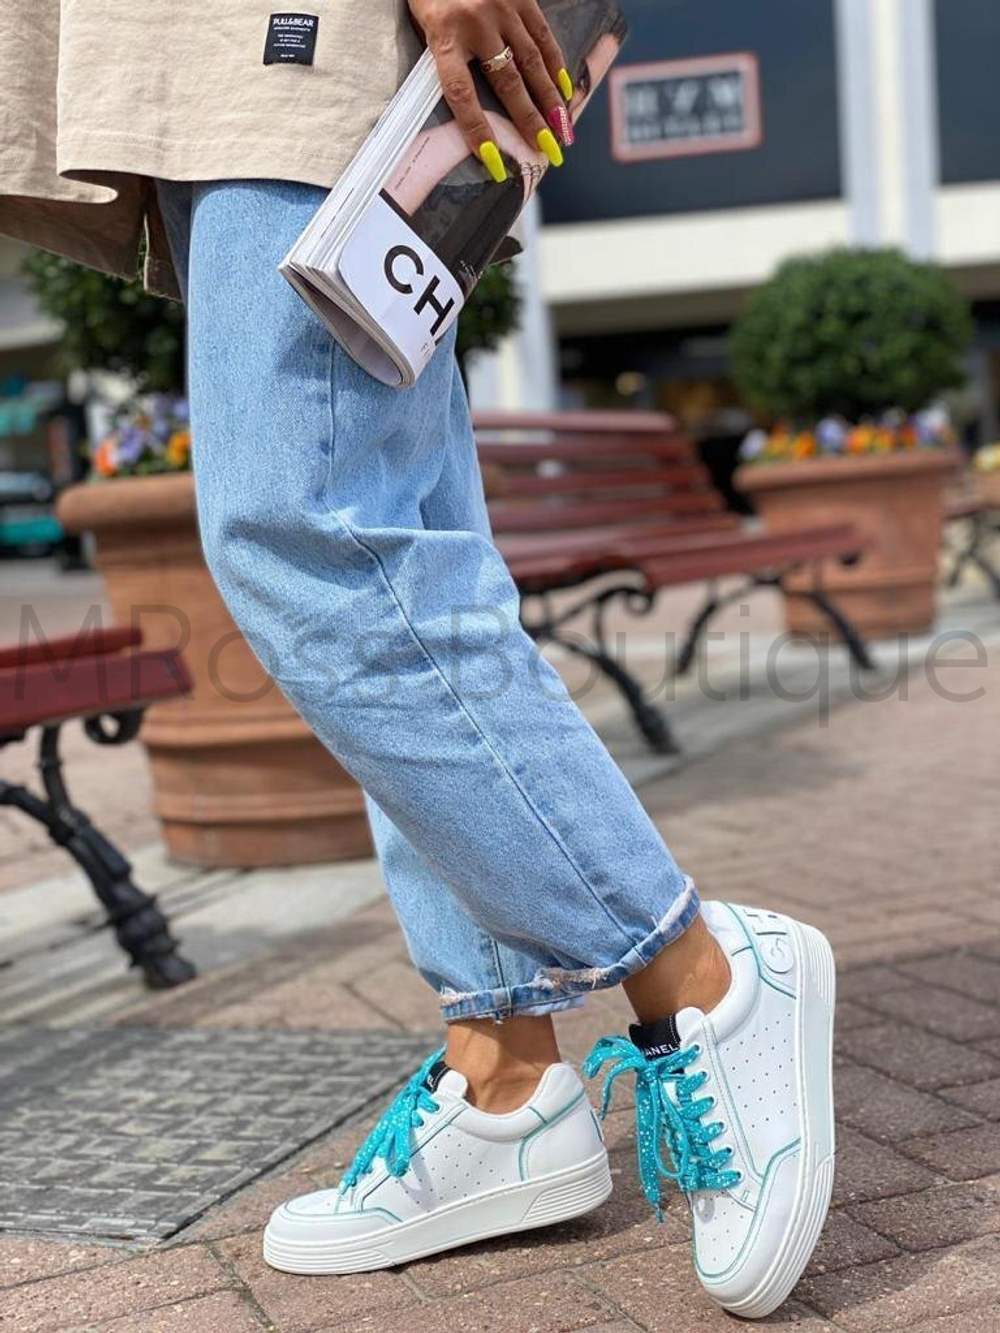 Белые кроссовки Chanel с голубыми шнурками Шанель люкс класса